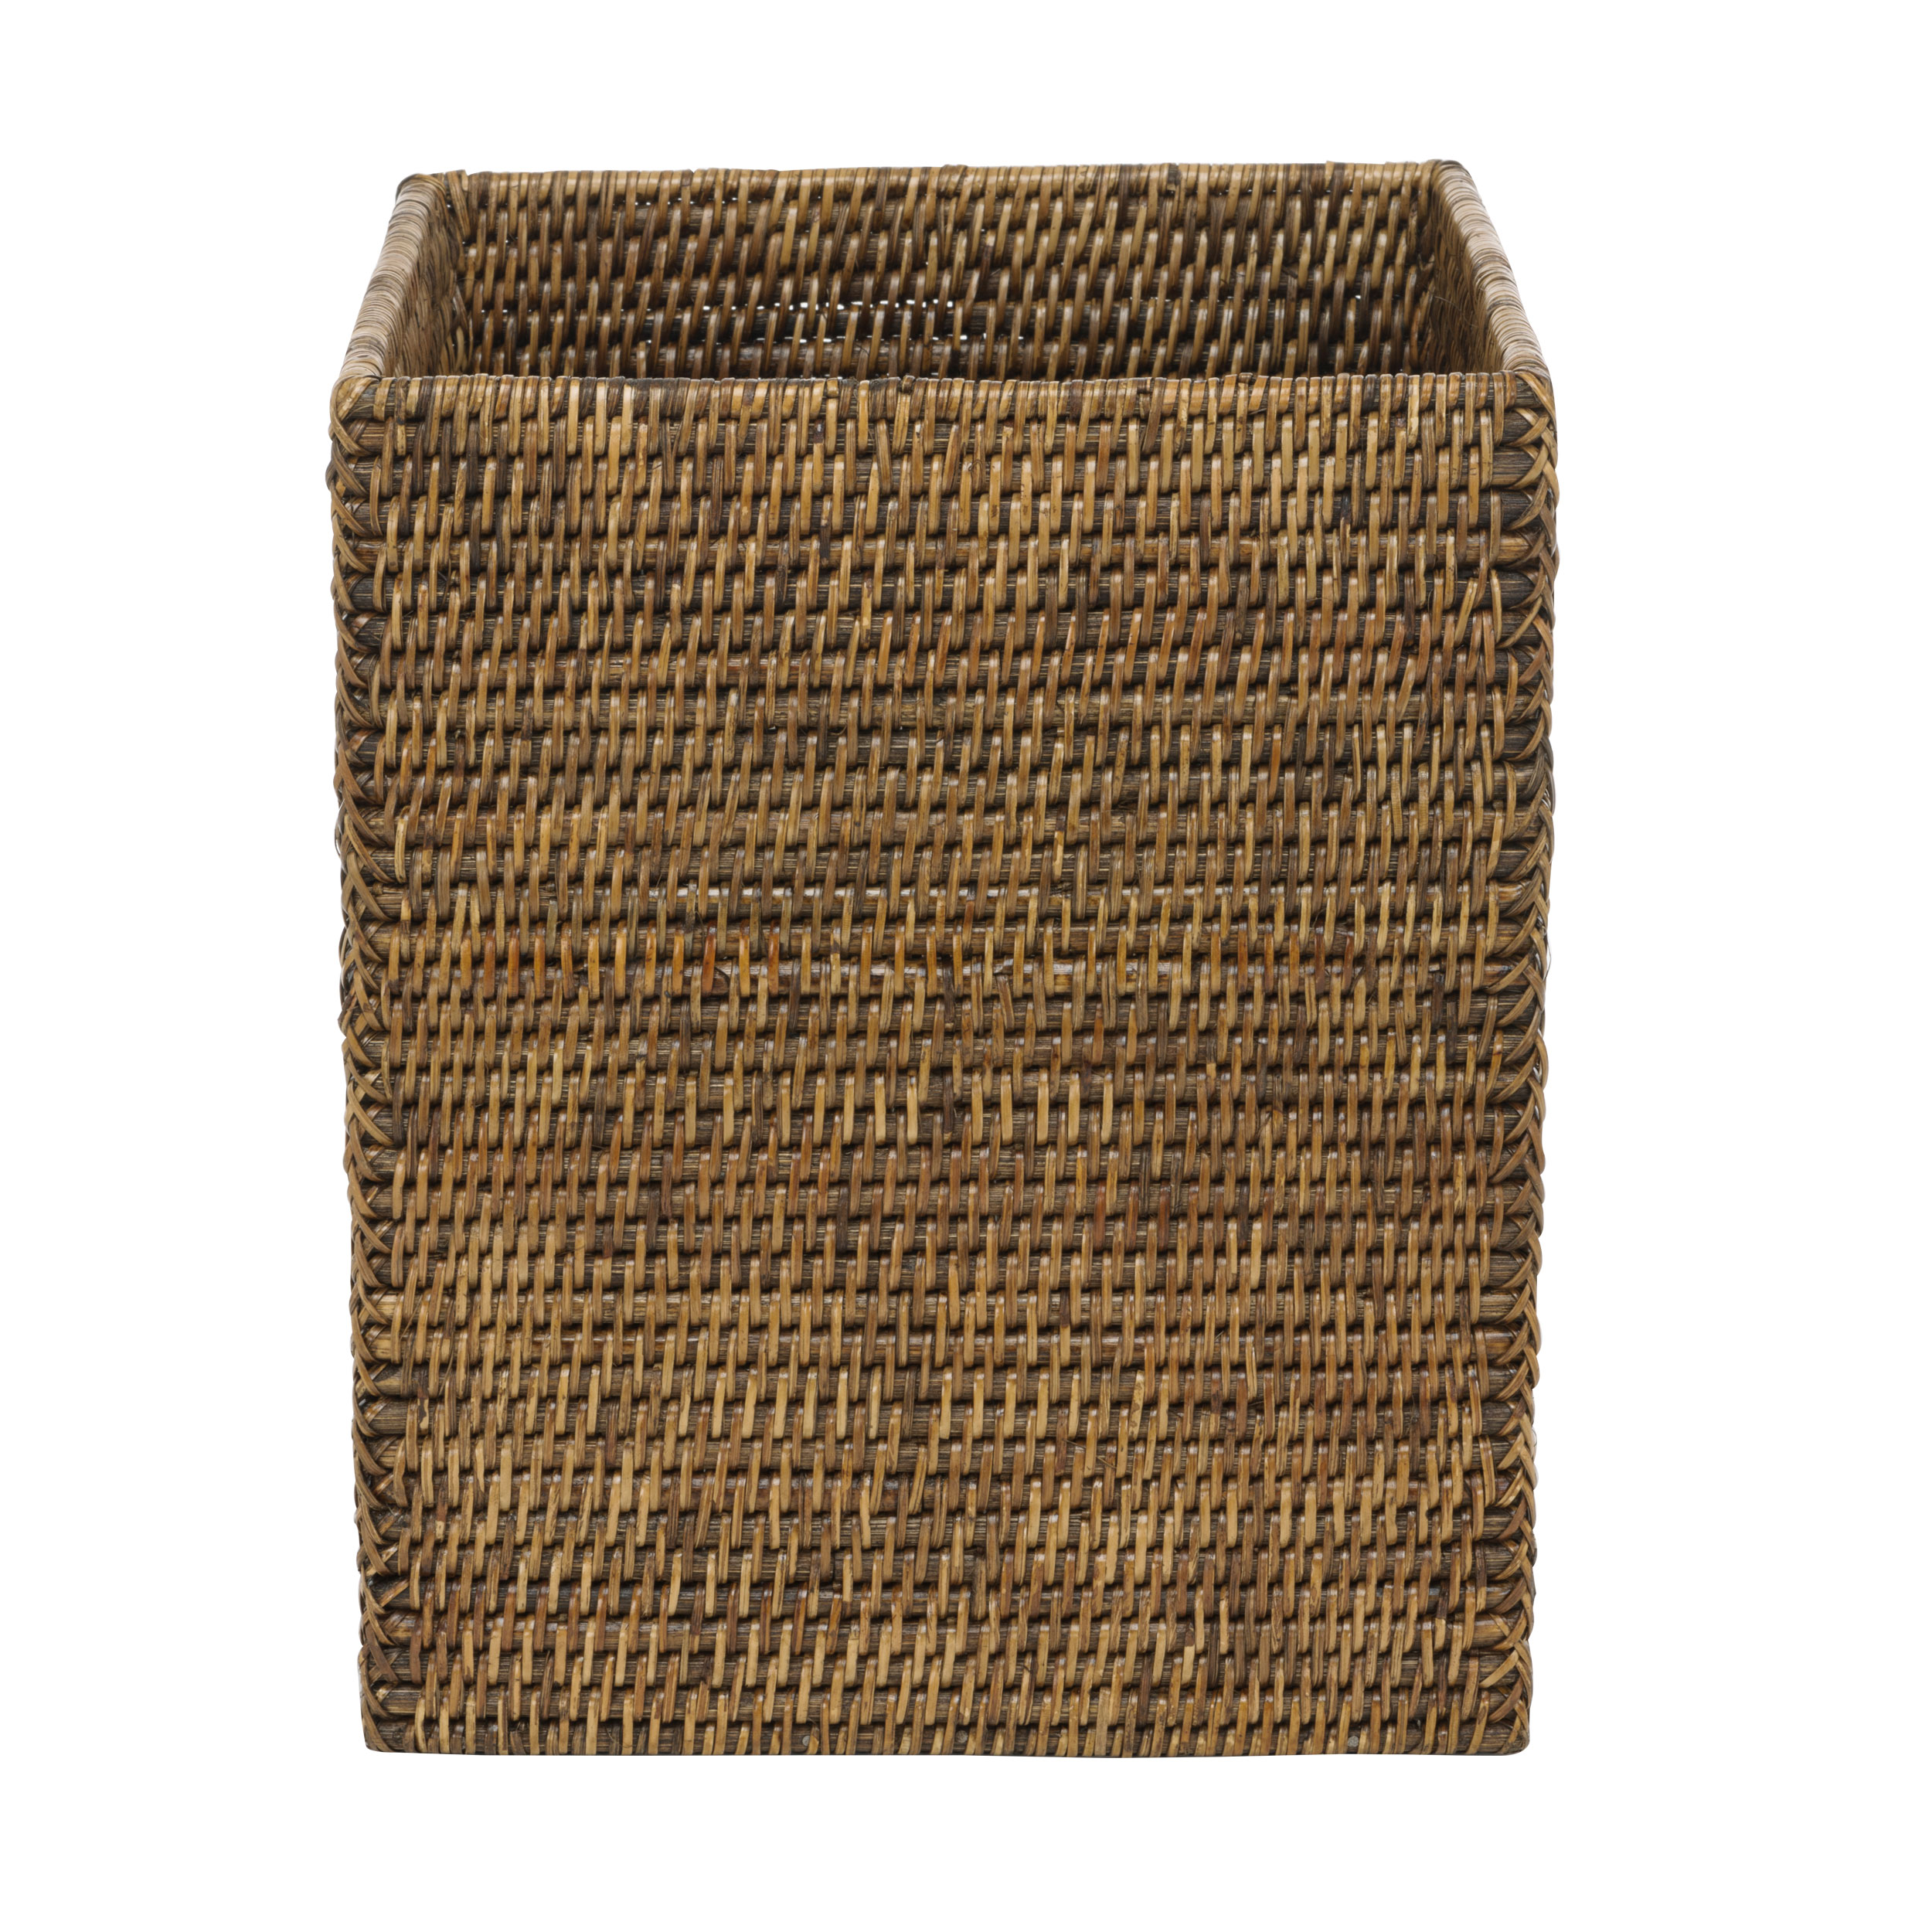 Basket Papierkorb quadratisch